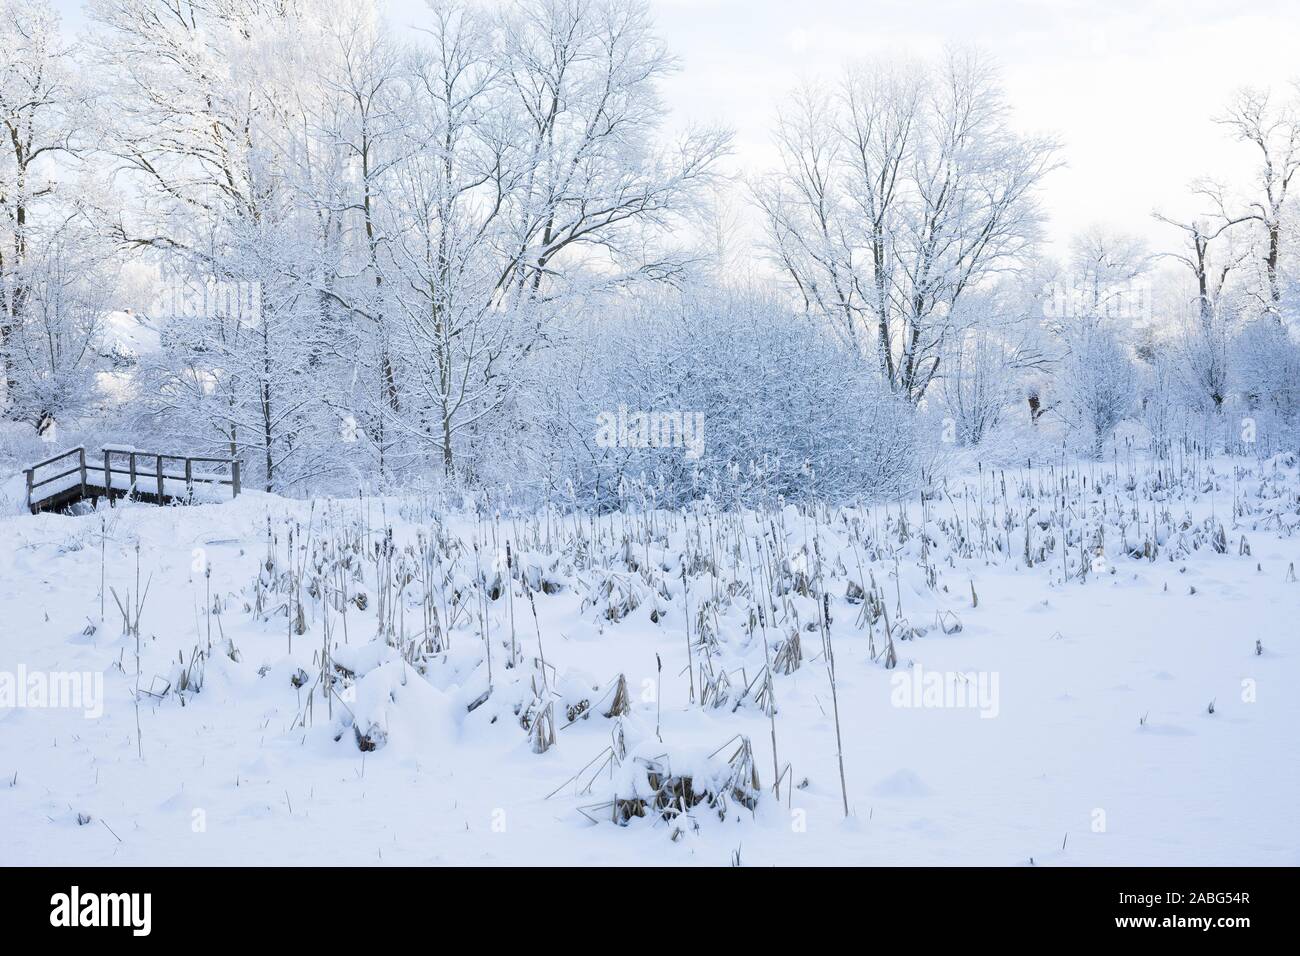 Zugefrorener Teich mit Rohrkolben, Winter, Schnee, Eis, Winterlandschaft, Winterstimmung, winterlich, eisig, kalt, snow Stock Photo